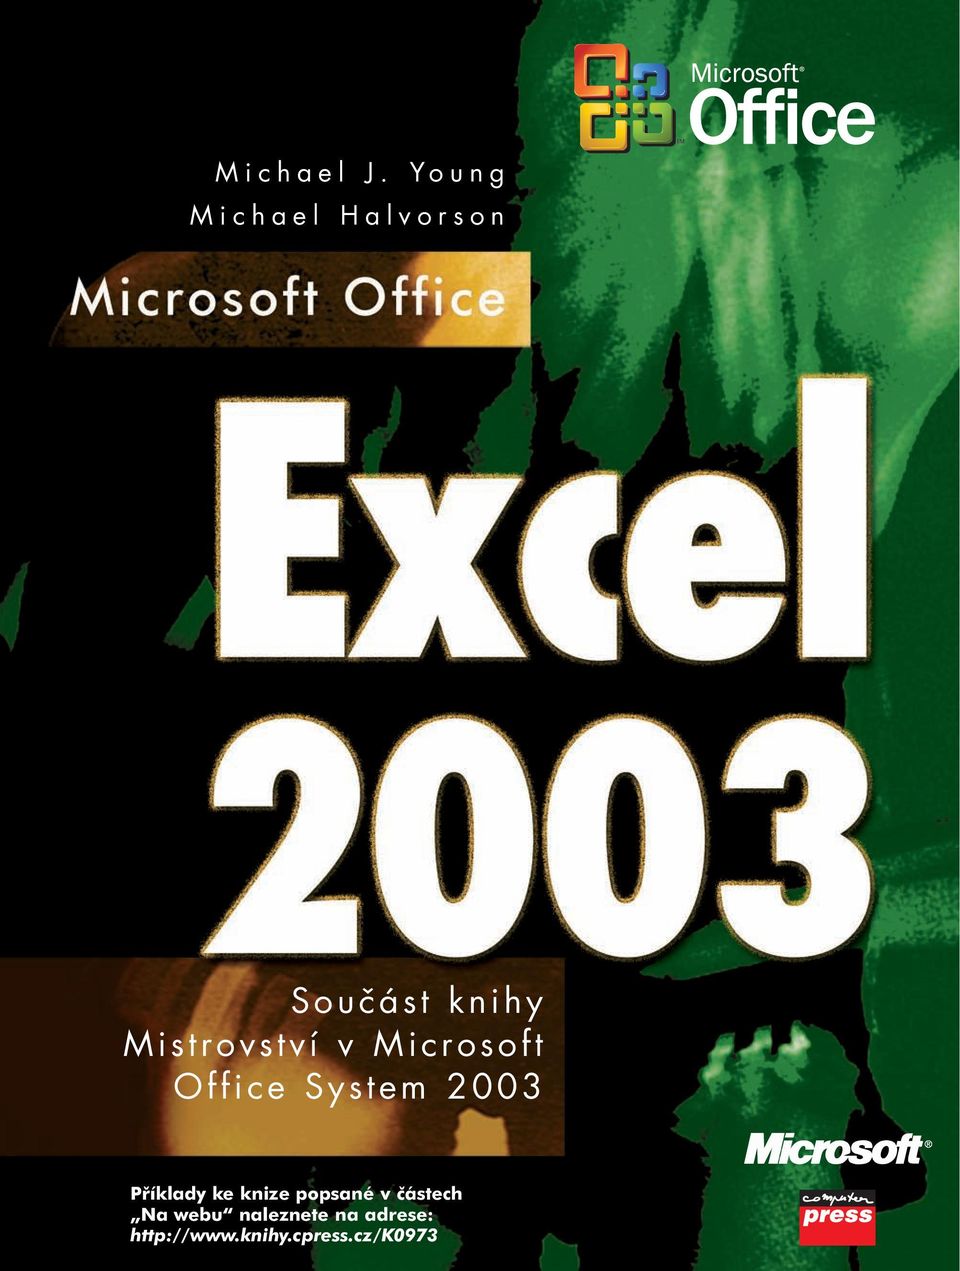 Mistrovství v Microsoft Office System 2003